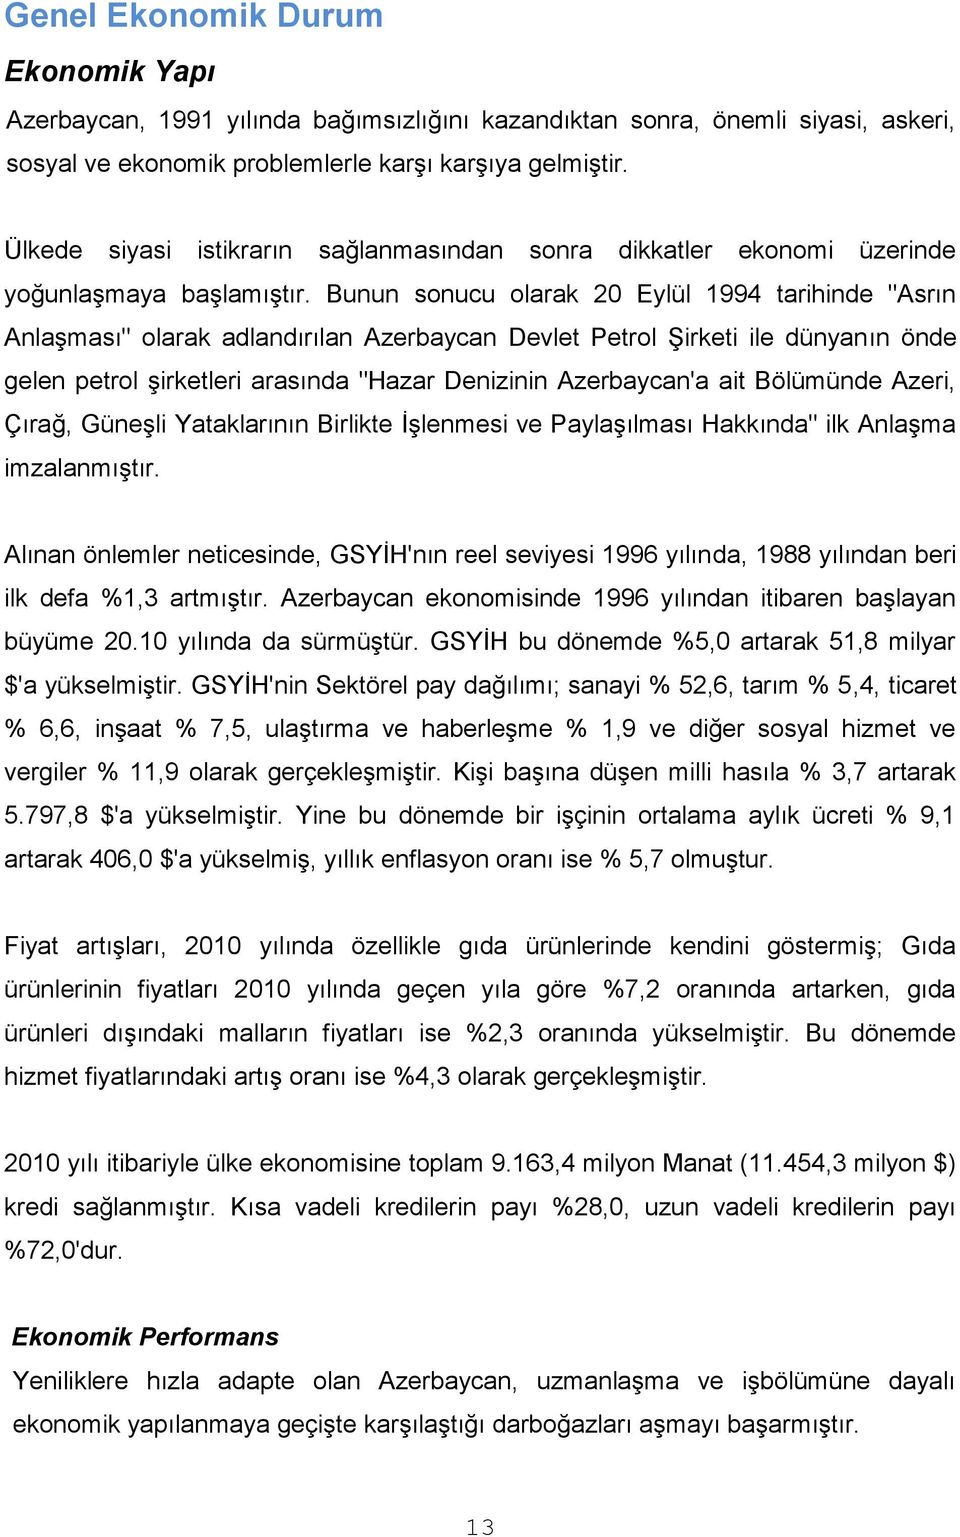 Bunun sonucu olarak 20 Eylül 1994 tarihinde "Asrın Anlaşması" olarak adlandırılan Azerbaycan Devlet Petrol Şirketi ile dünyanın önde gelen petrol şirketleri arasında "Hazar Denizinin Azerbaycan'a ait